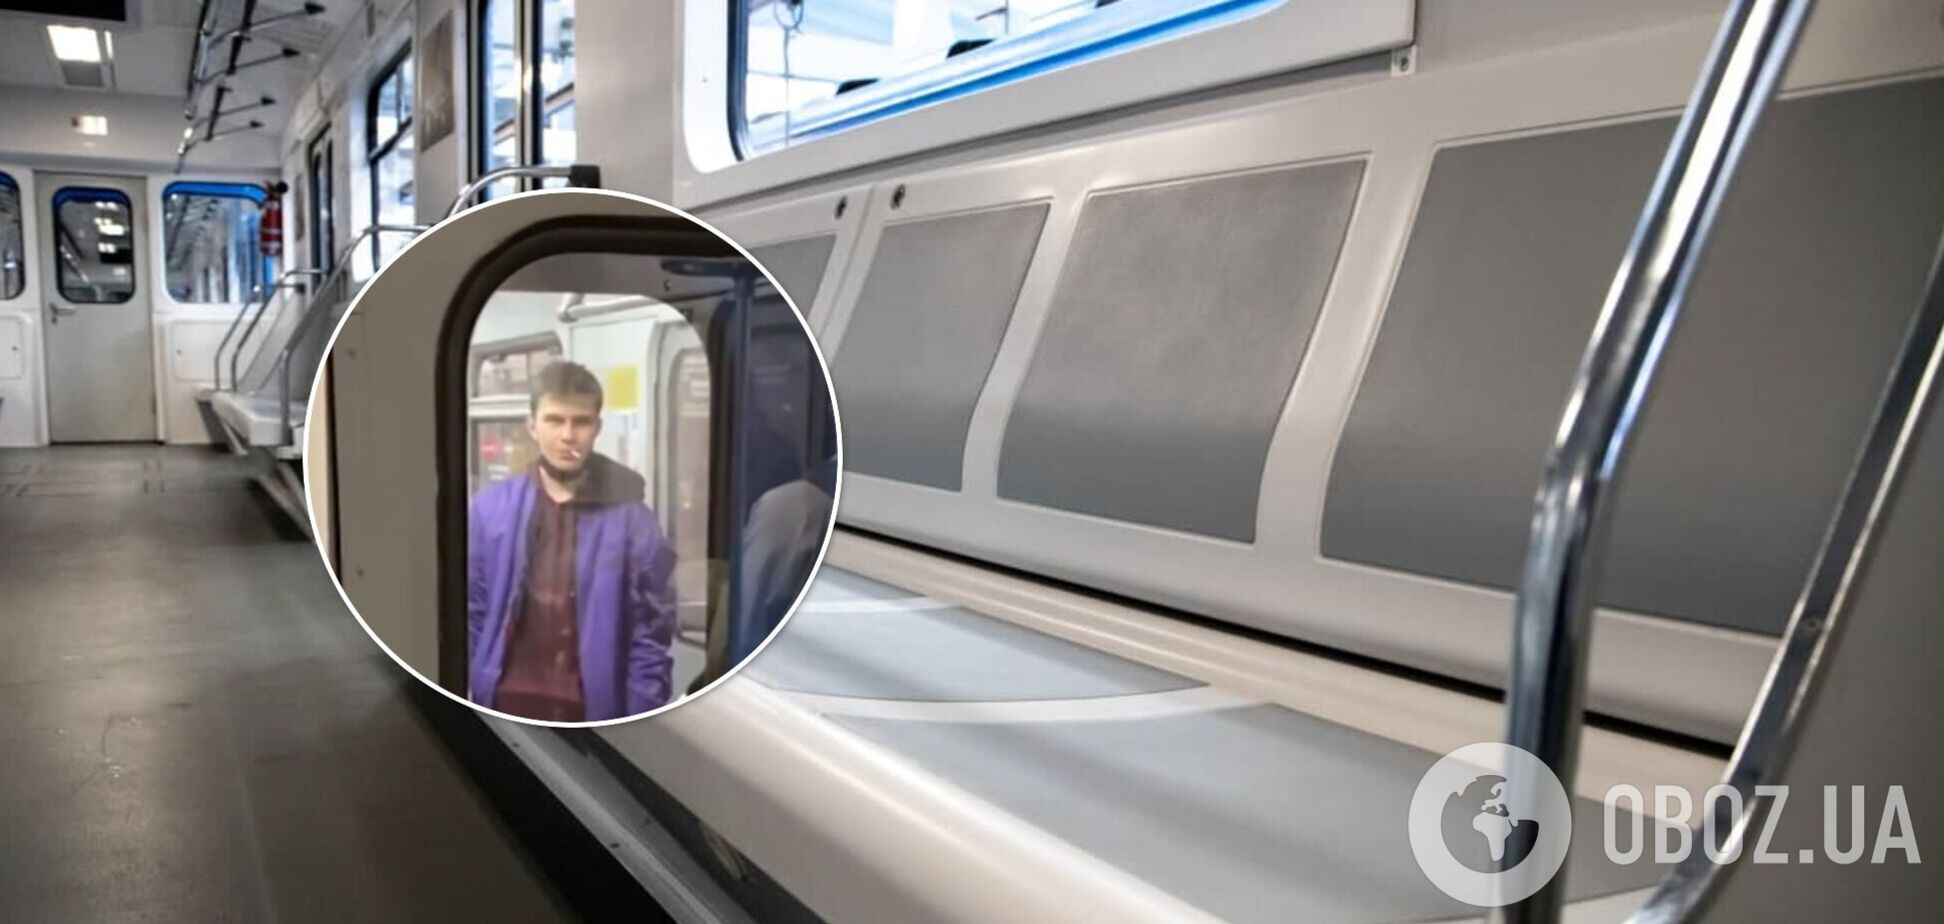 В Киеве парень курил прямо в вагоне метро. Видео